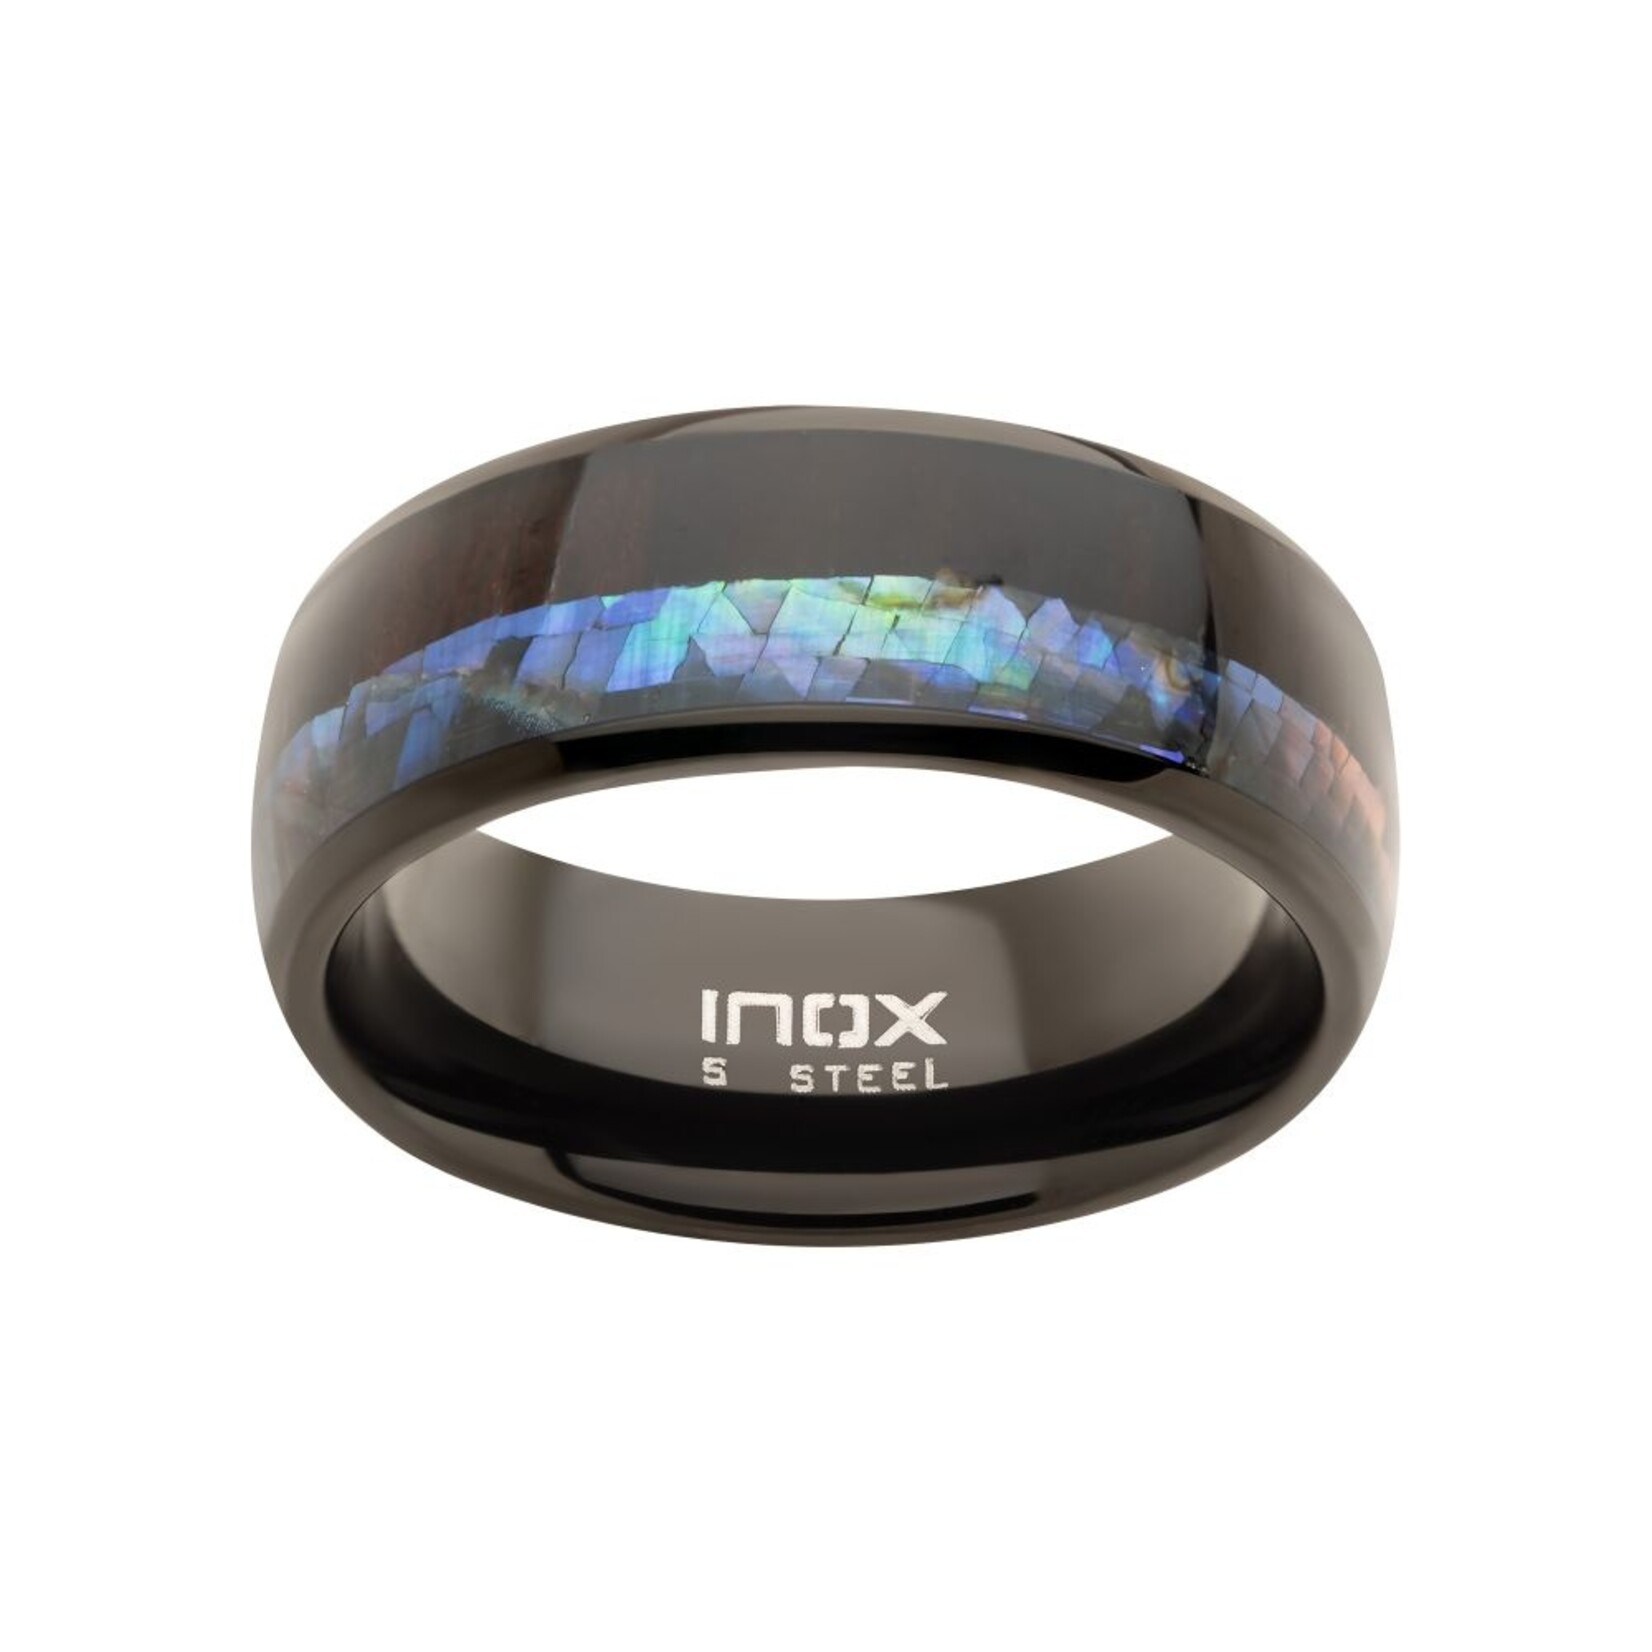 Inox Black IP Abalone Shell & Ebony Wood Inlay Ring